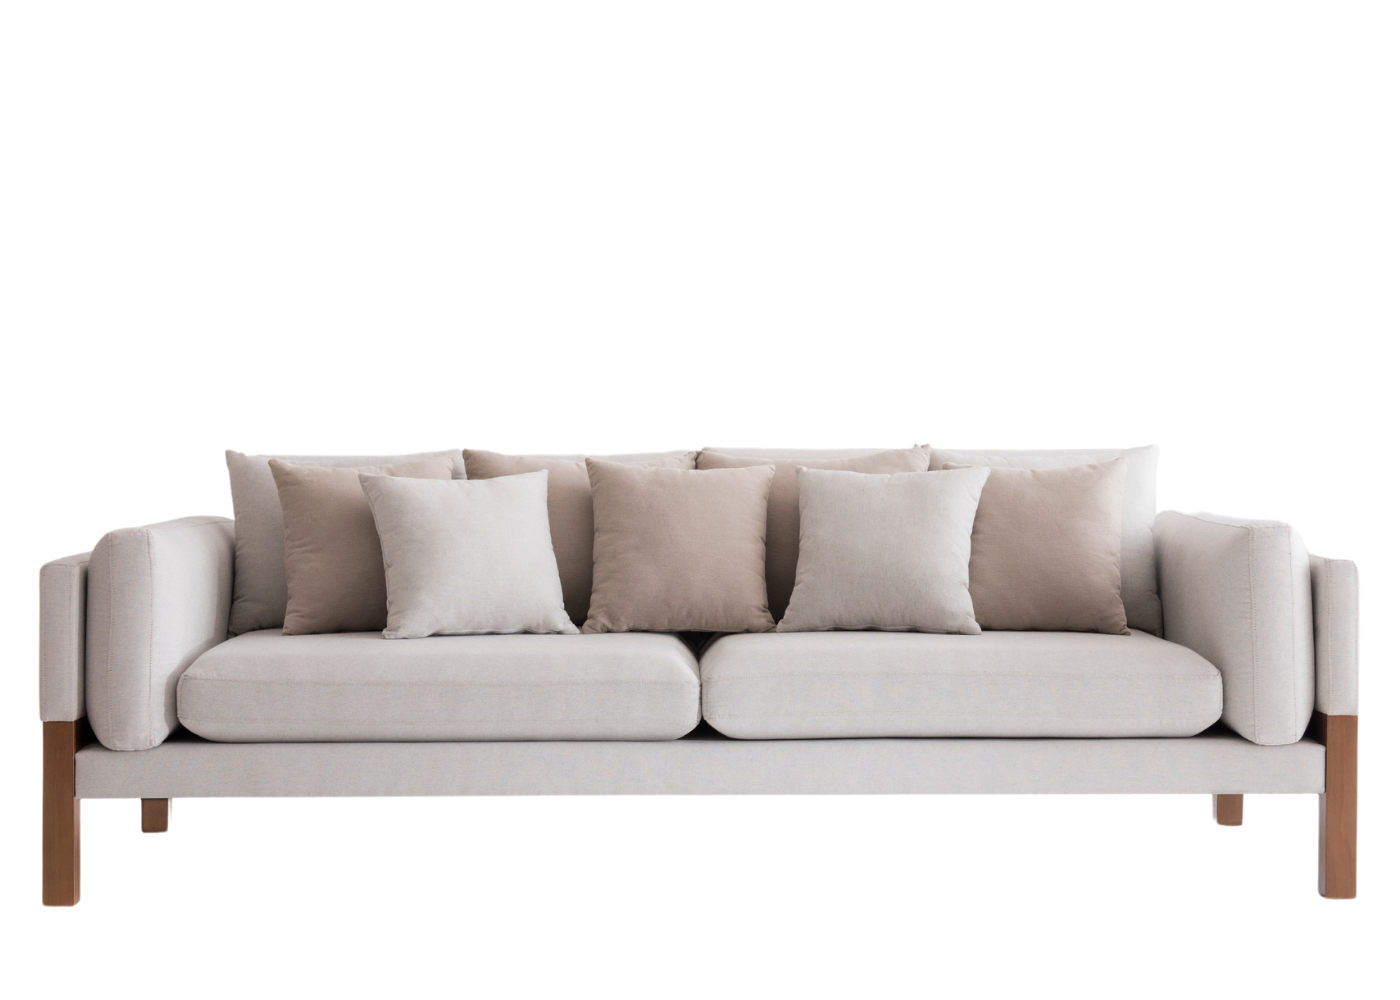 Detalhe da estética minimalista do Sofá Living Plural.